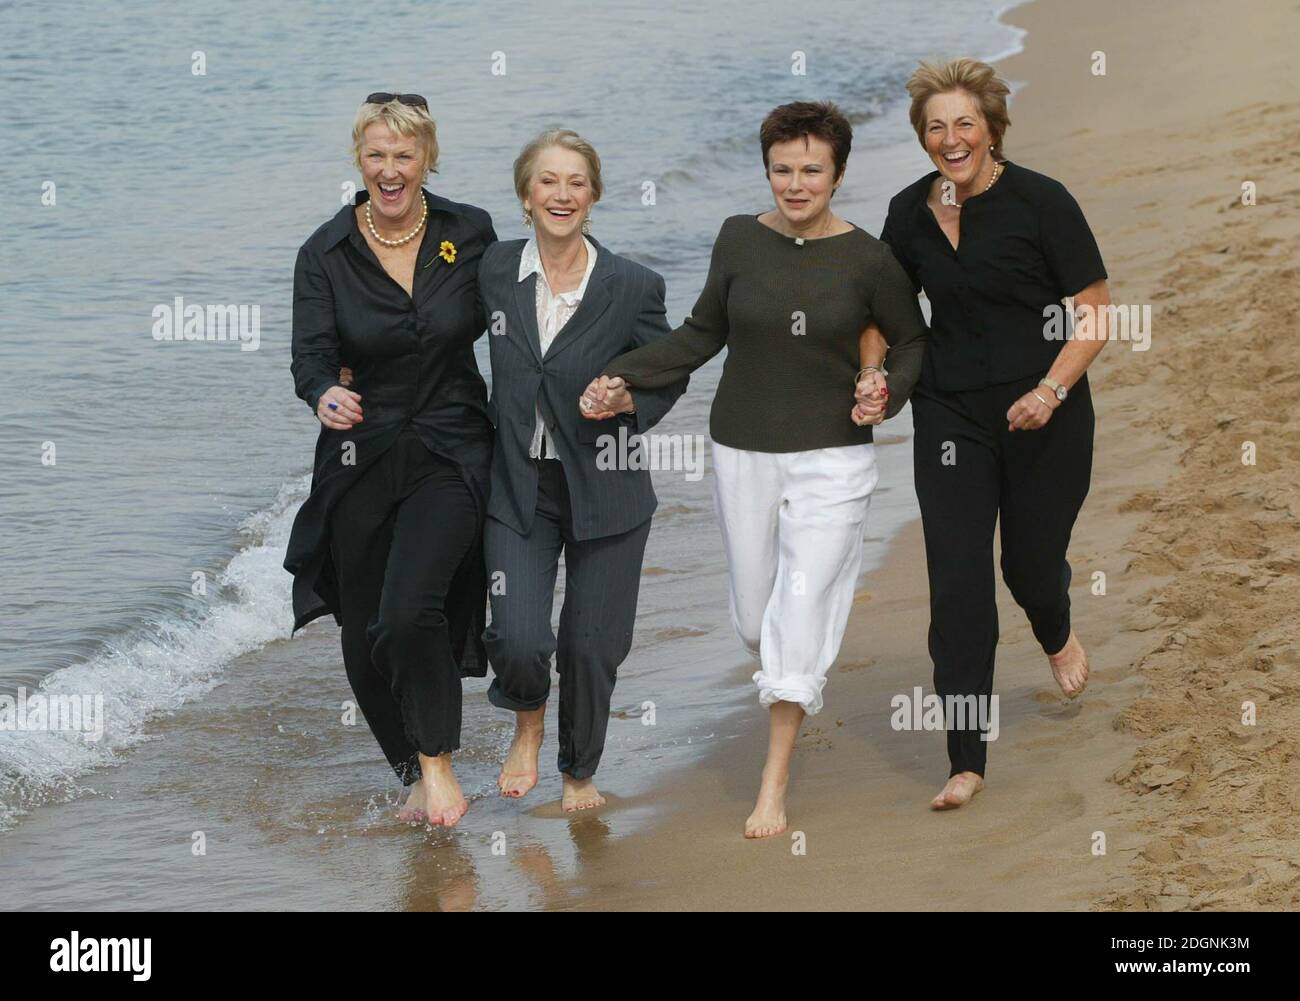 Julie Walter et Helen Mirren ainsi que Tricia Stewart et Angela Baker à Cannes pour promouvoir leur nouveau film Calender Girls. Pleine longueur, drôle. © Doug Peters@allaction.co.uk Banque D'Images